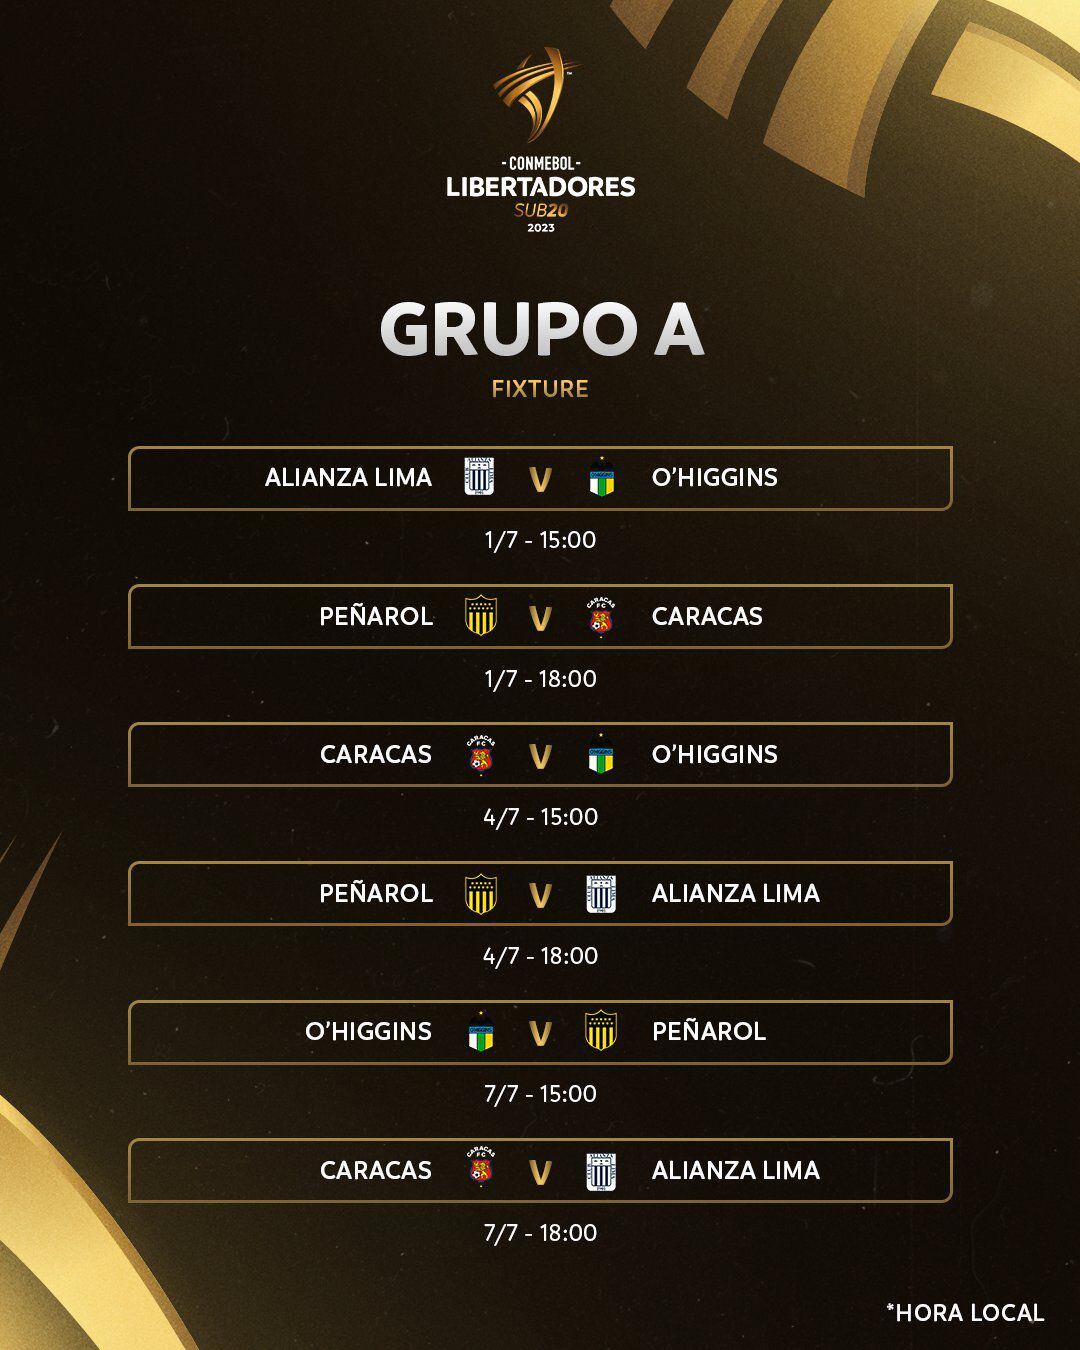 Alianza Lima participará en el grupo A de la Copa Libertadores sub 20. Sus rivales serán Peñarol, Caracas y O'Higgins. Su debut será el 1 de julio. (Conmebol Libertadores sub 20)